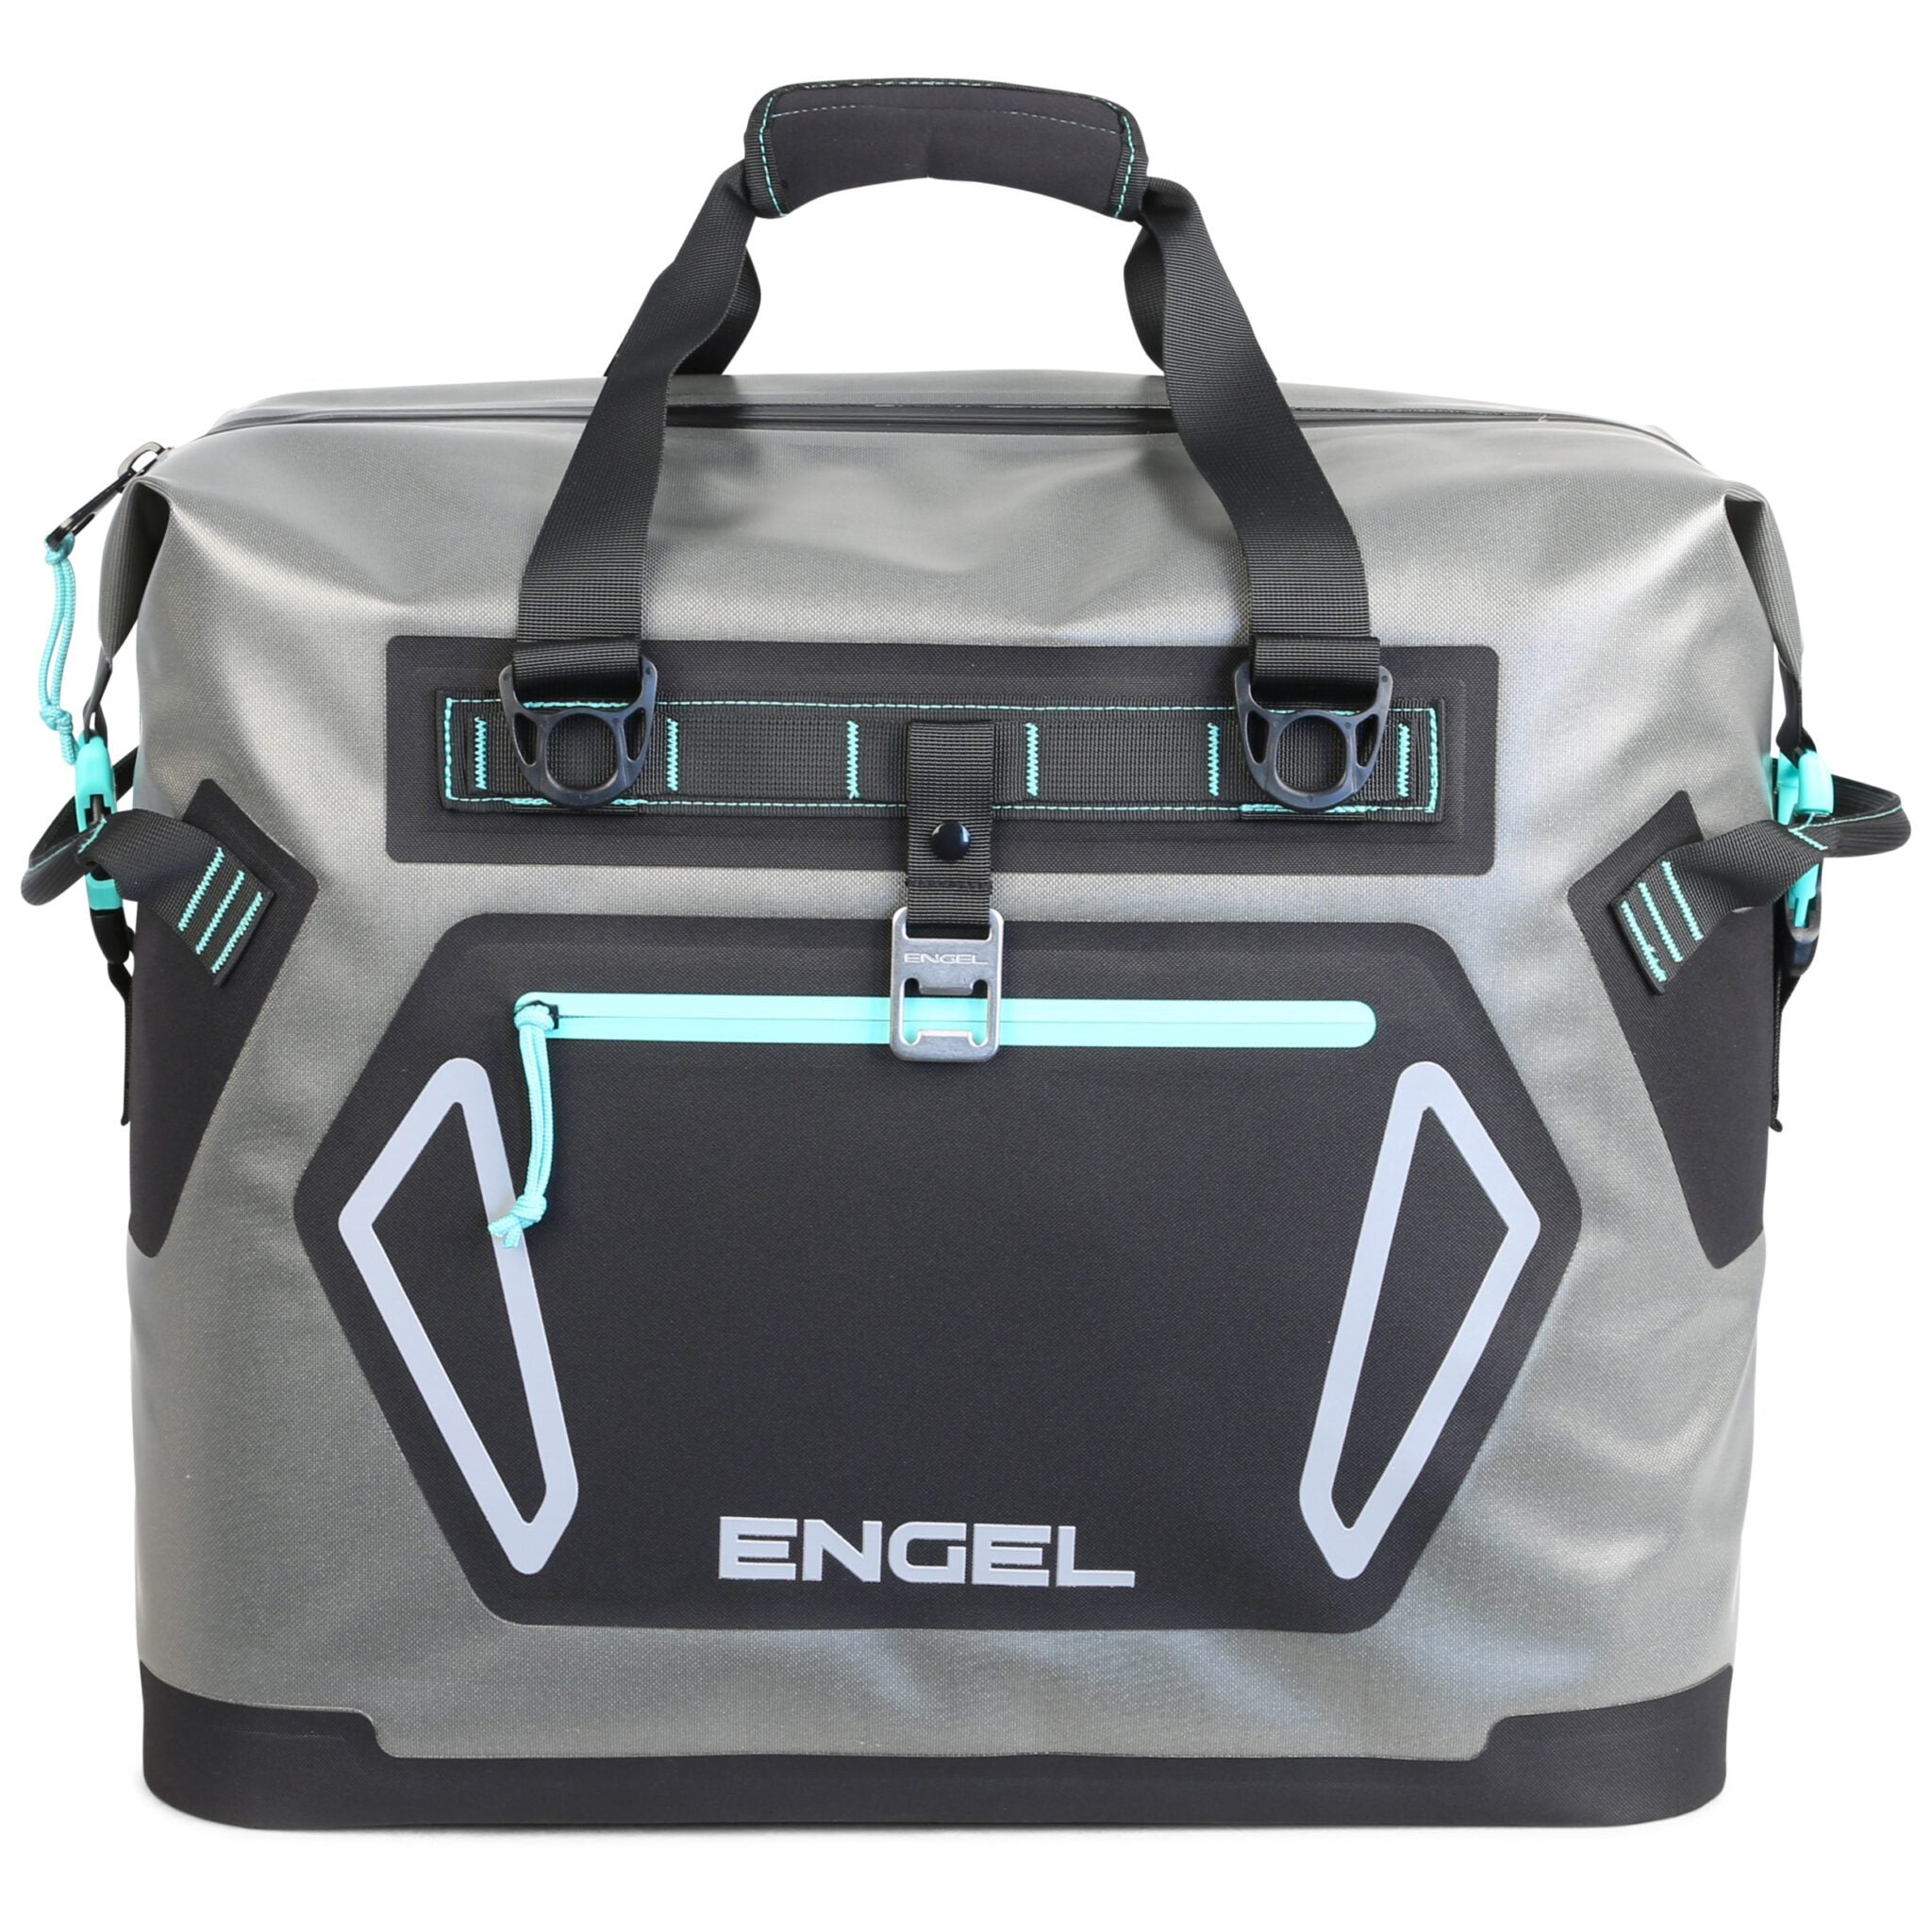 Engel Soft Cooler Bag 20LT Seaform